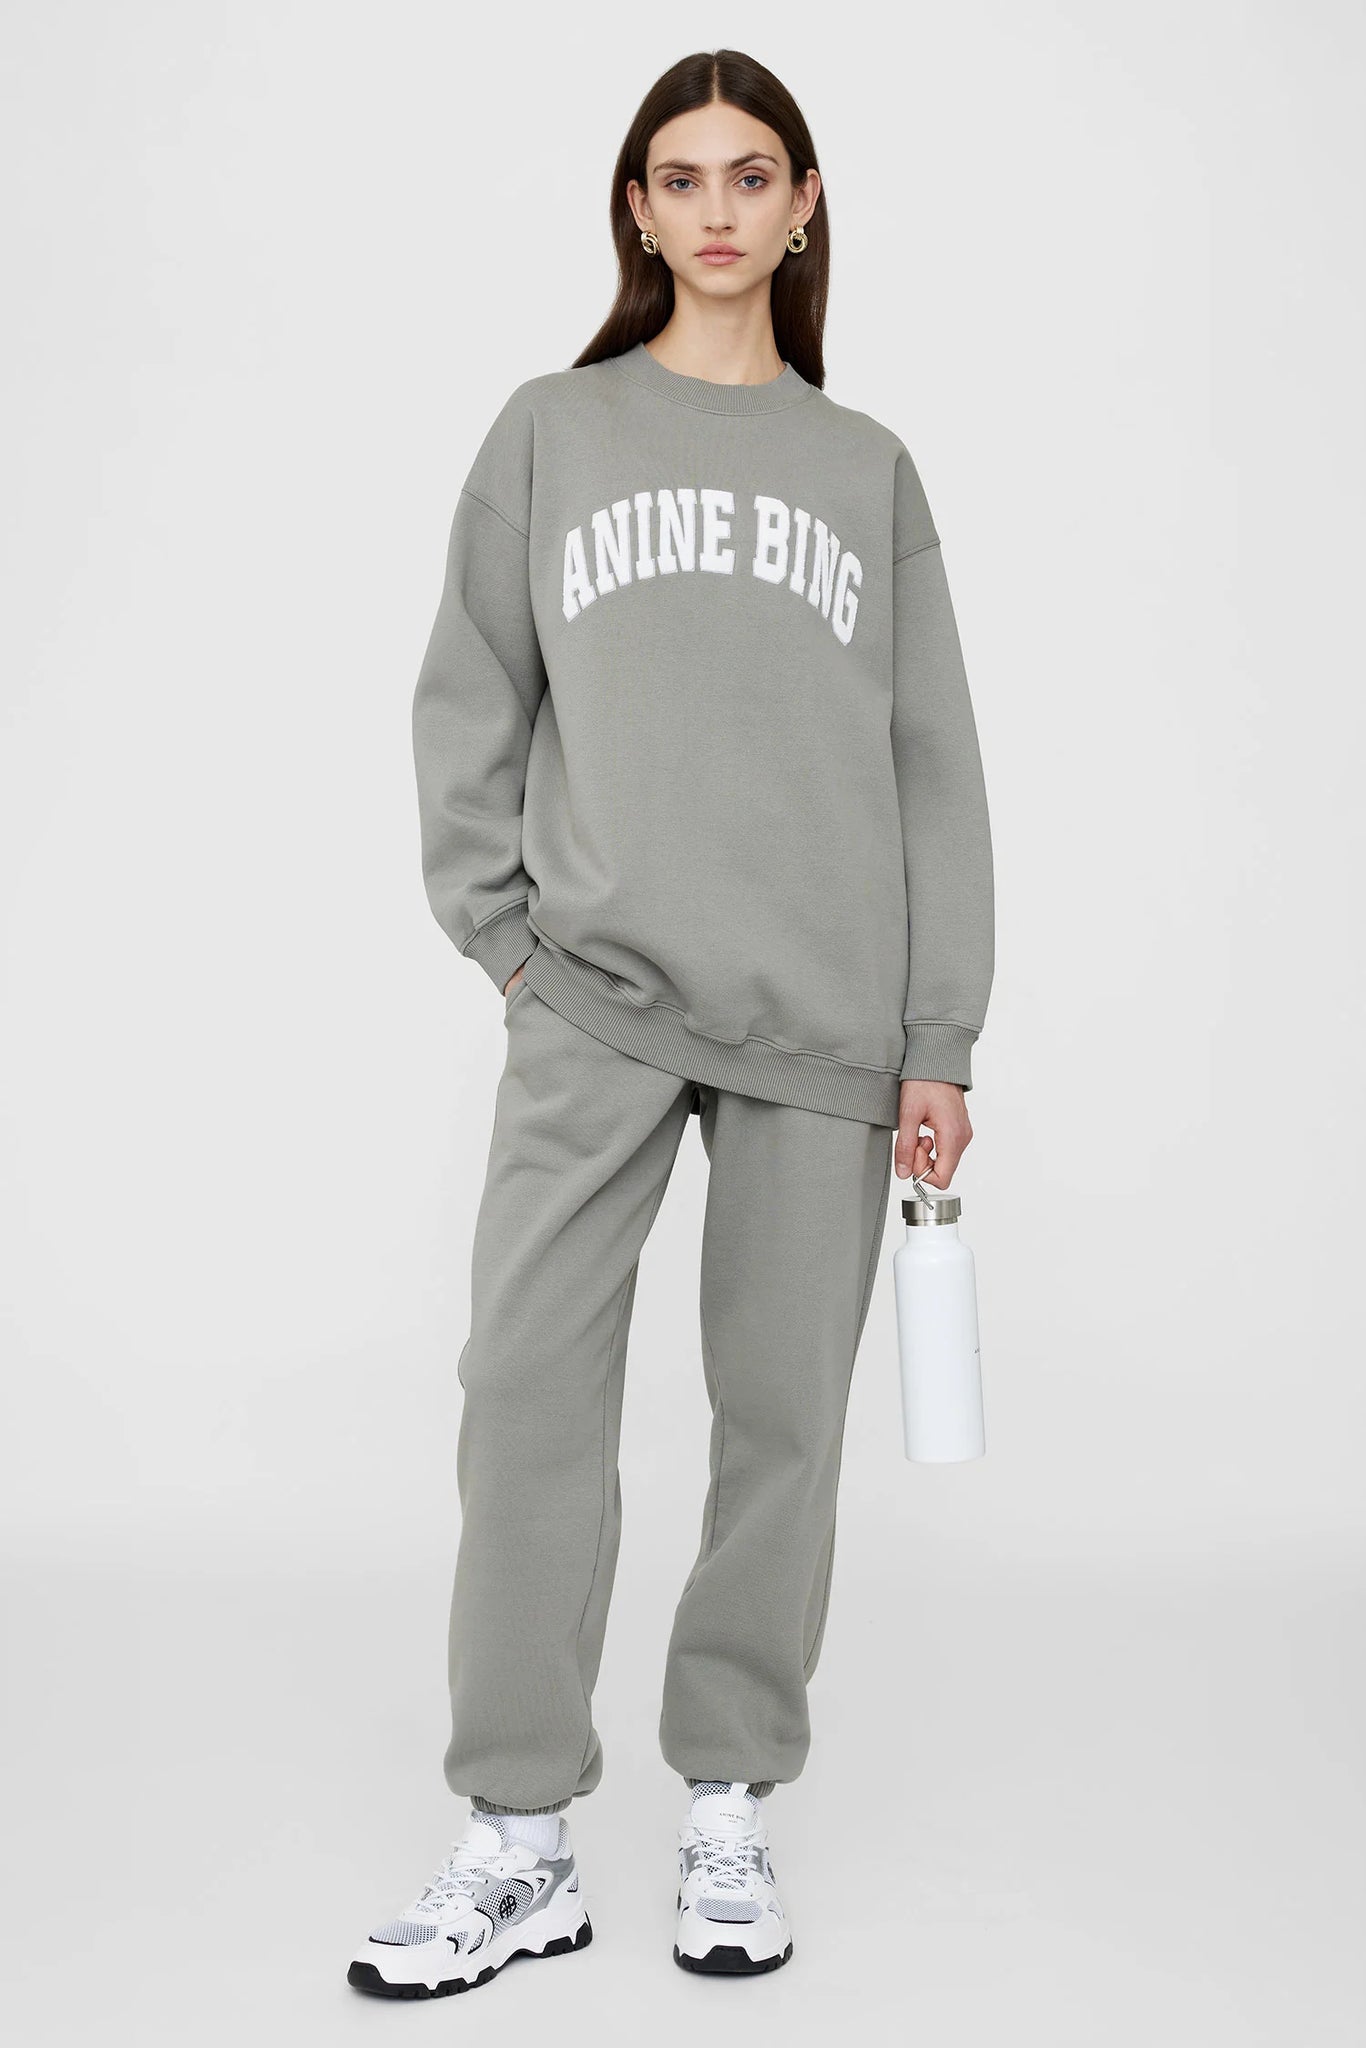 Anine Bing Tyler Sweatshirt in Storm Grey